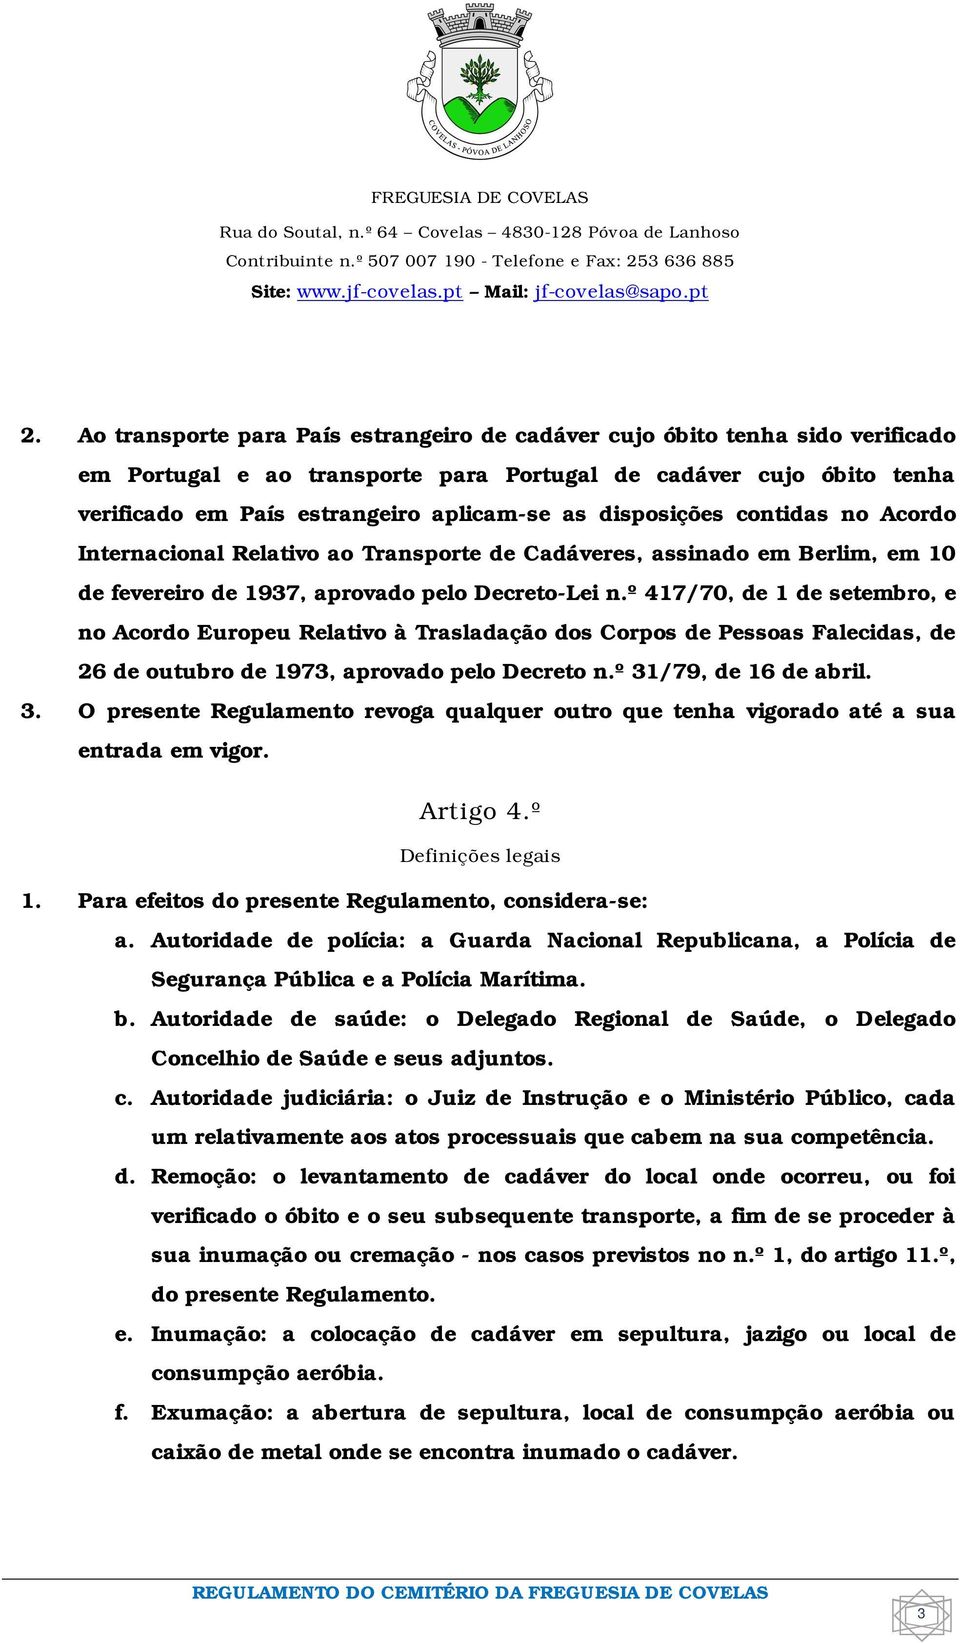 º 417/70, de 1 de setembro, e no Acordo Europeu Relativo à Trasladação dos Corpos de Pessoas Falecidas, de 26 de outubro de 1973, aprovado pelo Decreto n.º 31